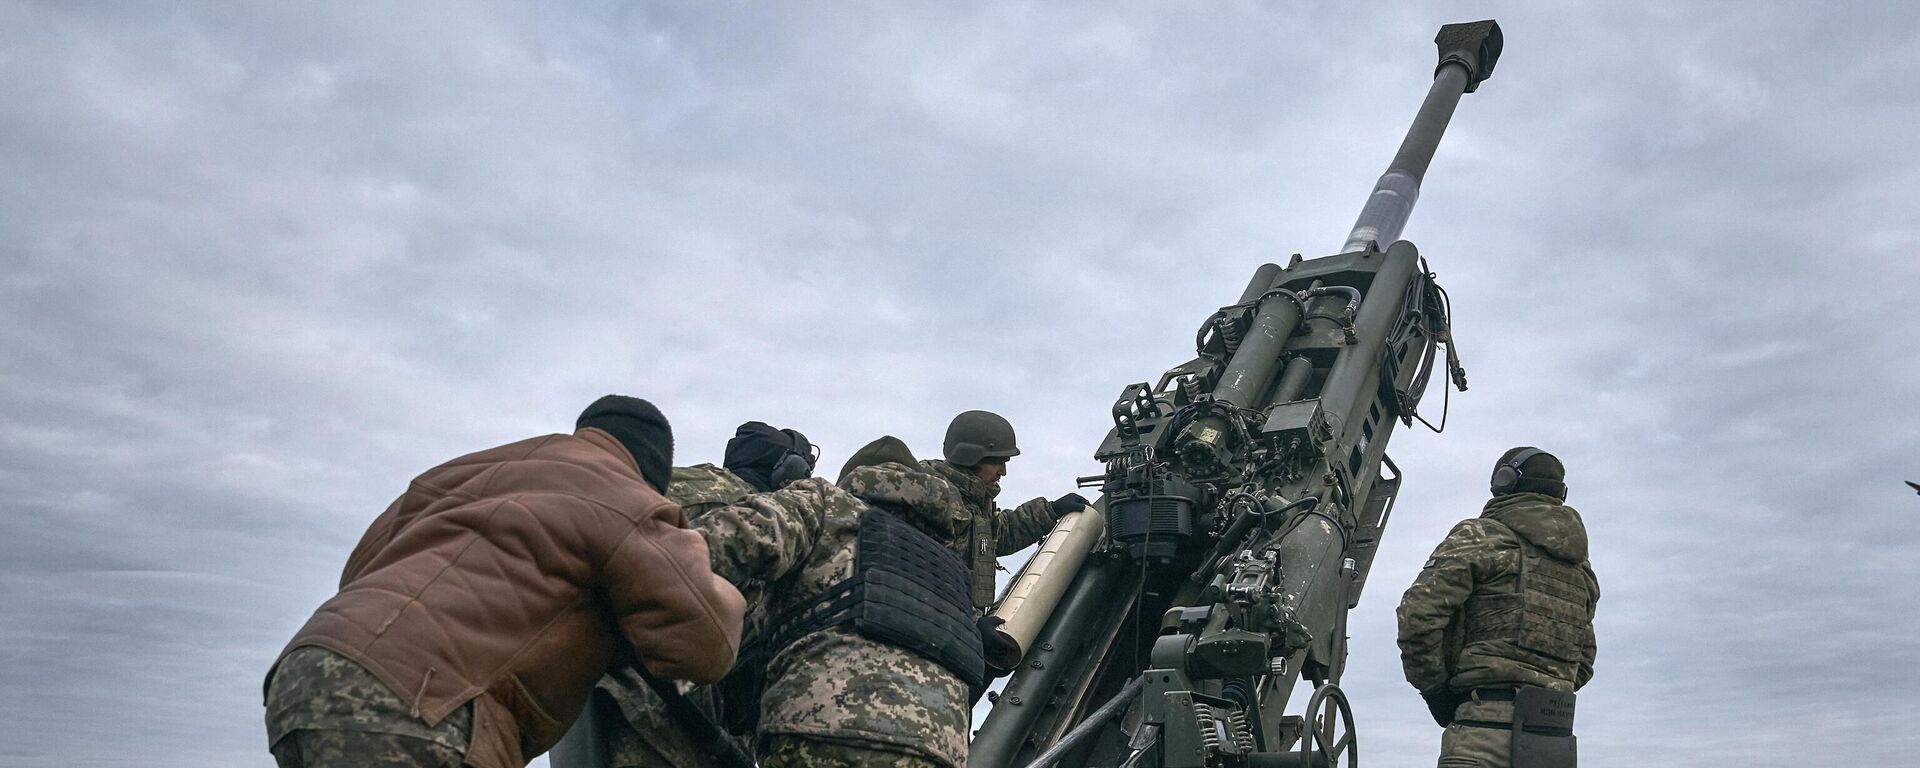 Militares ucranianos operan un sistema de artillería estadounidense M777 en la región de Jersón el 9 de enero de 2023 - Sputnik Mundo, 1920, 25.06.2023